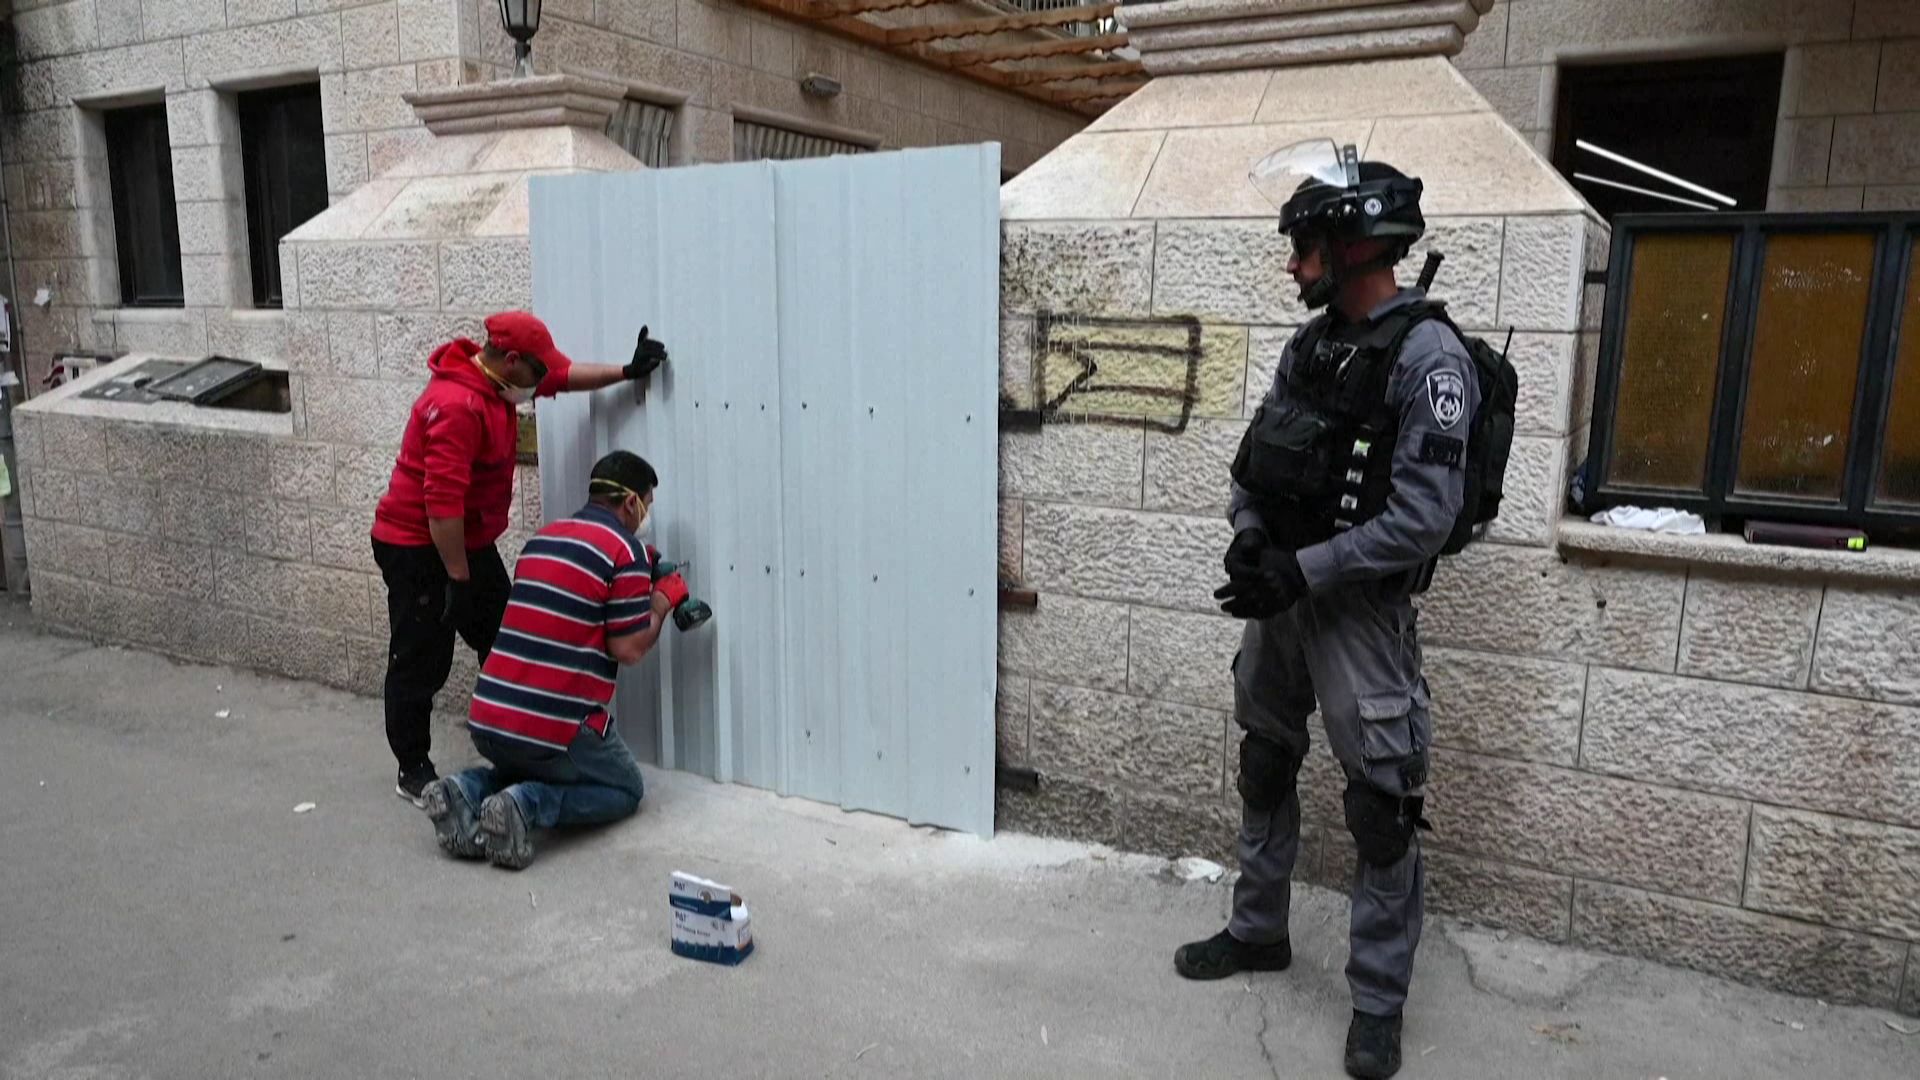 Les autorités ferment une synagogue dans le quartier ultra-orthodoxe de Mea Shearim à Jérusalem.
